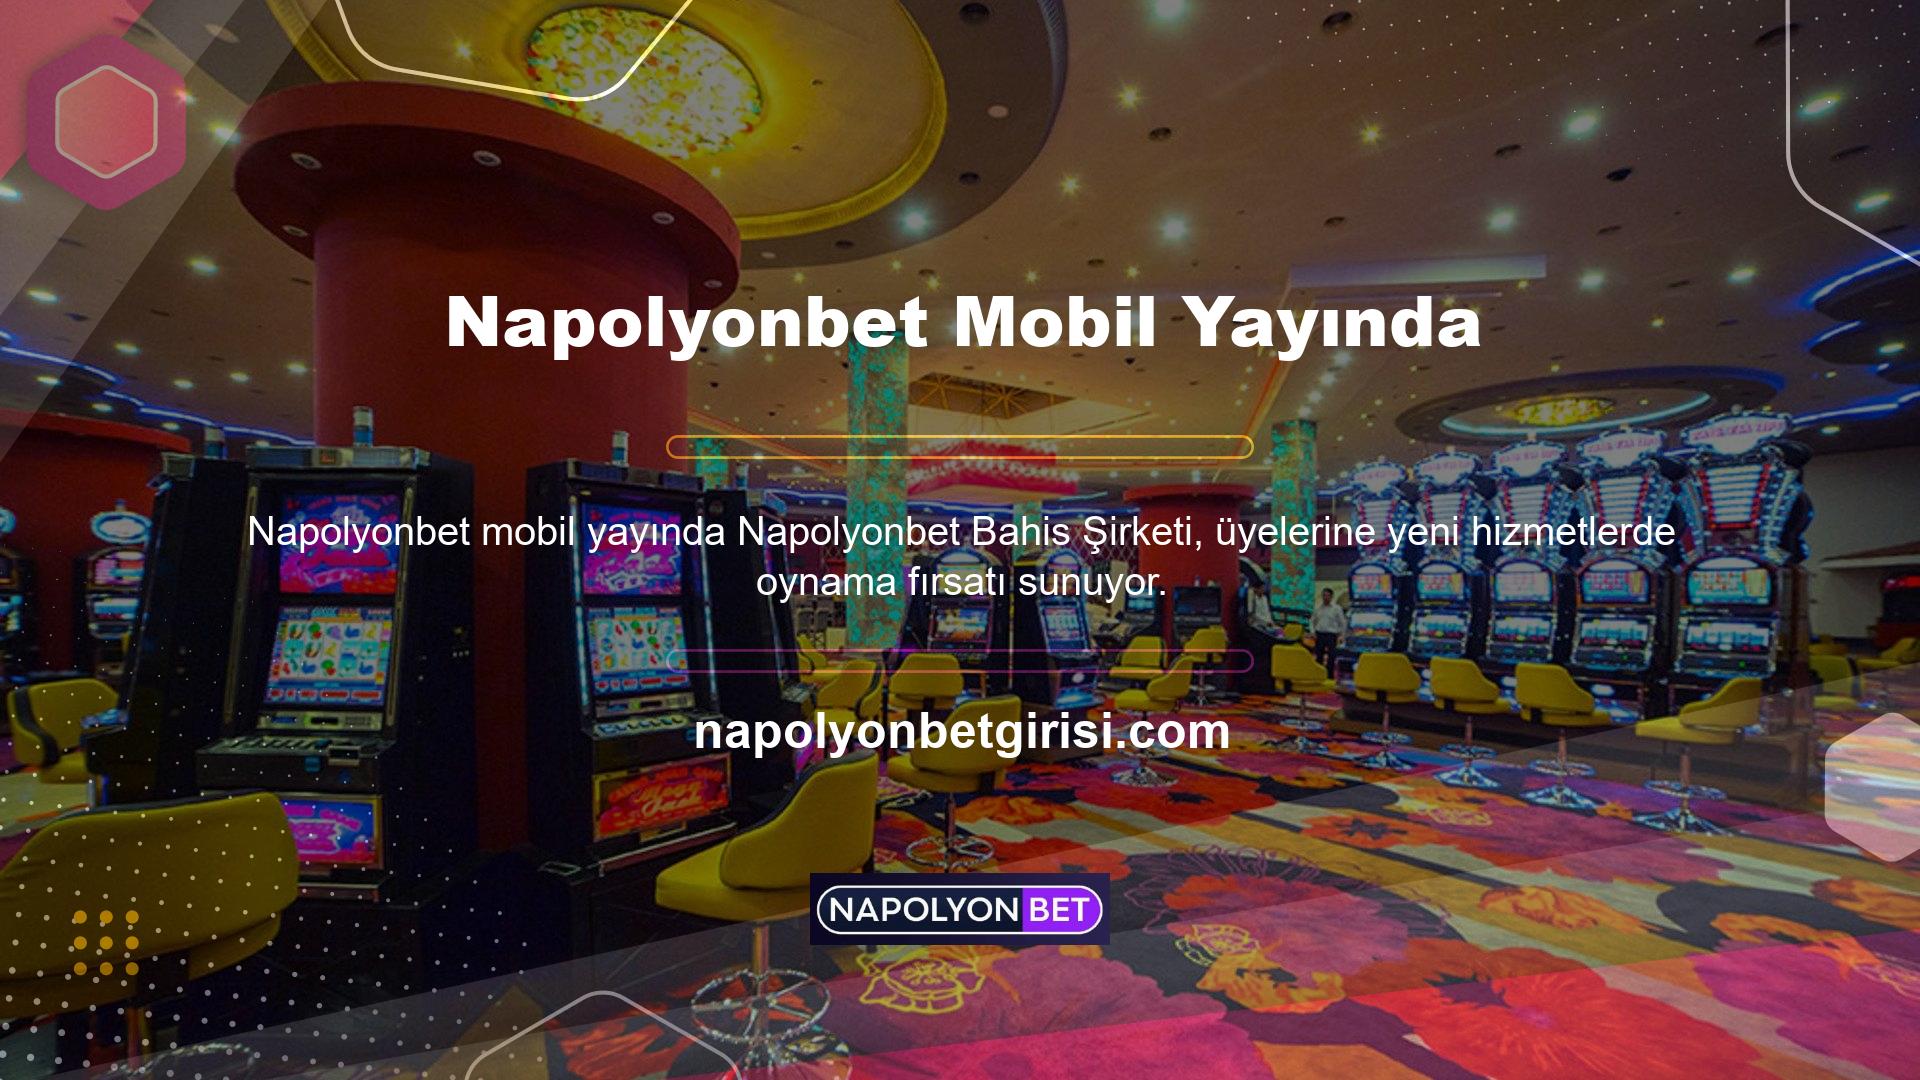 Bu yeni hizmetlerden biri olan Napolyonbet Mobil, cep telefonunuzdan çevrimiçi bahis oynamayı kolaylaştırıyor